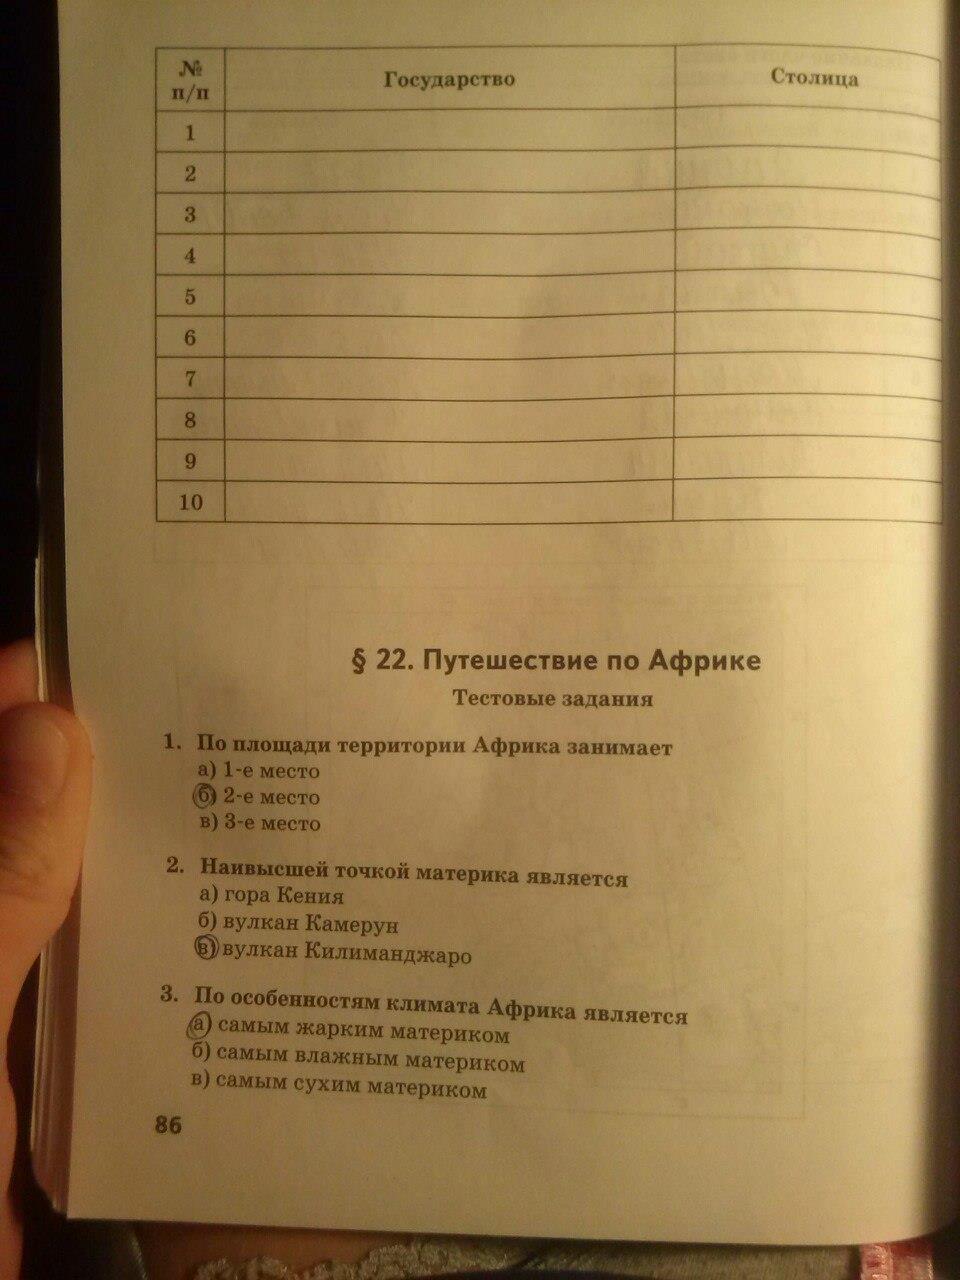 гдз 5 класс тетрадь-практикум страница 86 география Молодцов